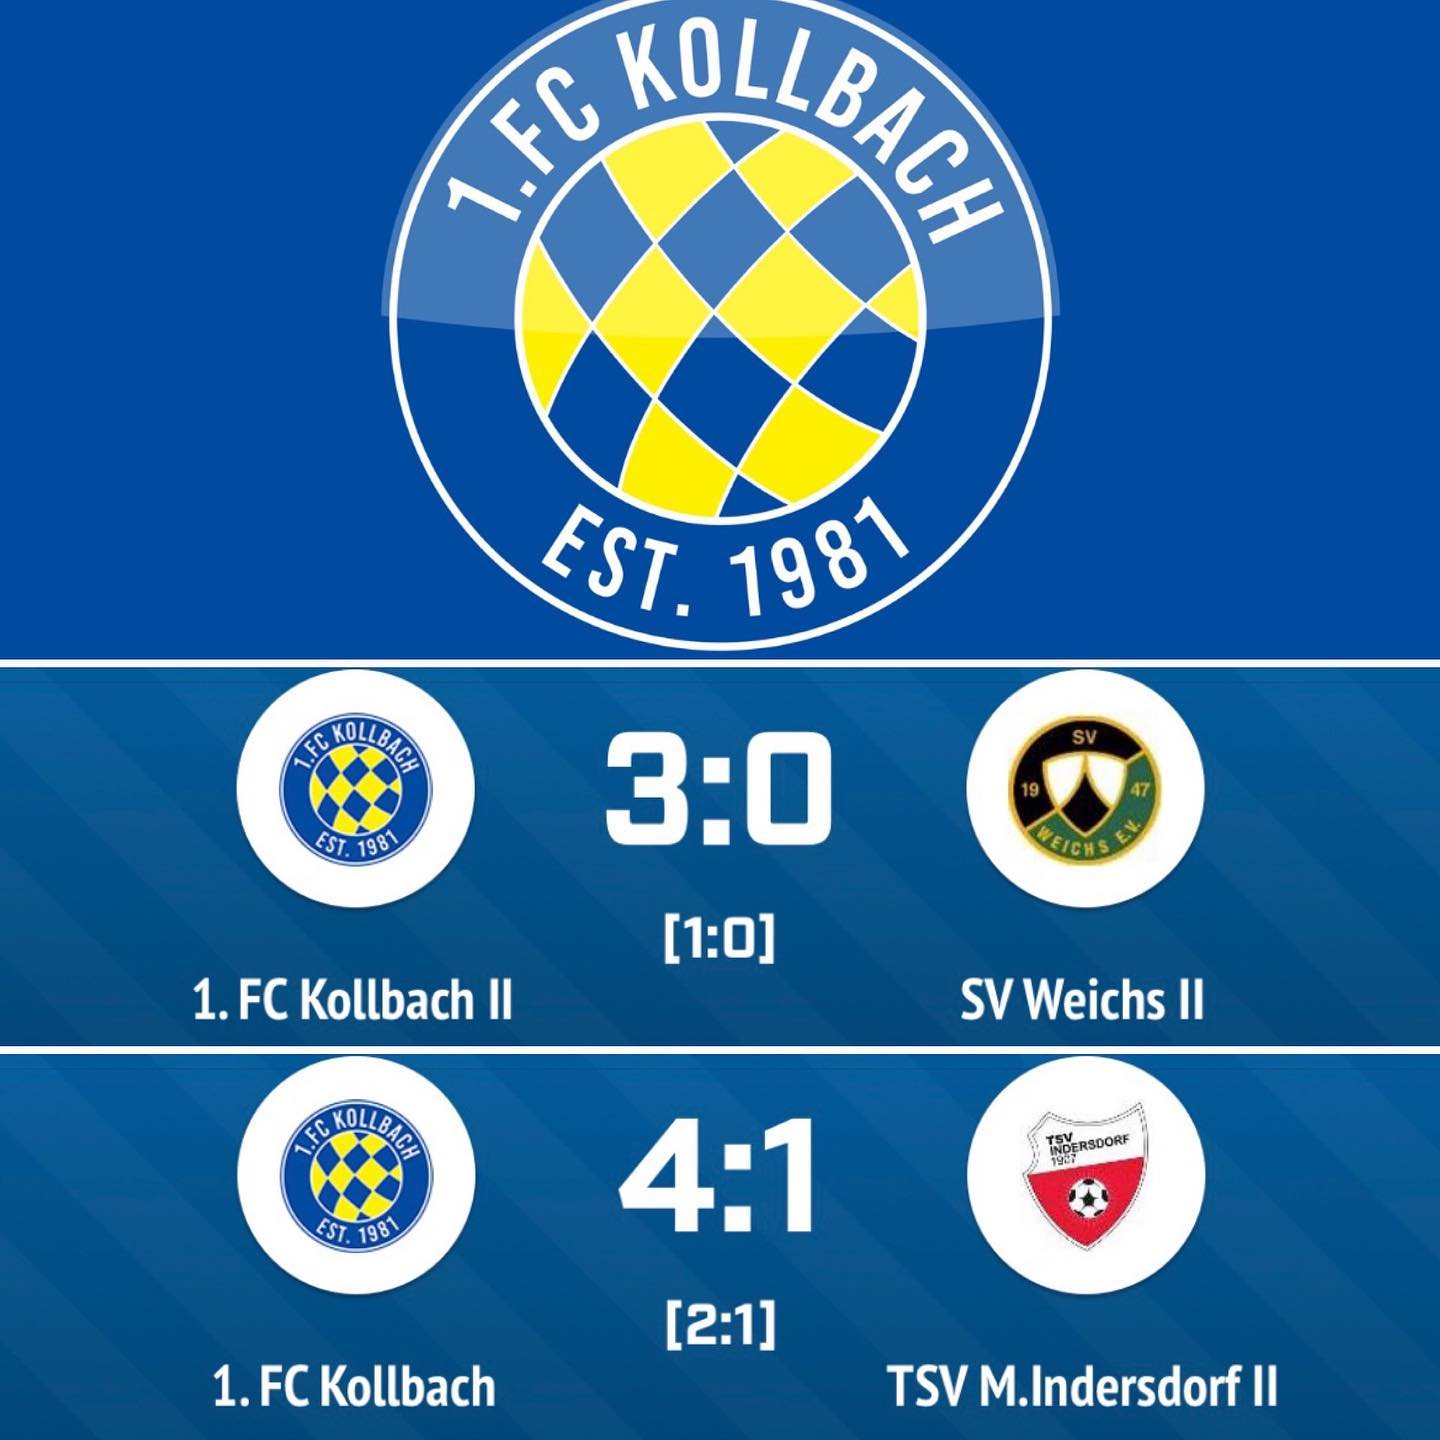 ### Erster Spieltag ###

Der Saisonstart unserer beider Mannschaften ist gelungen! Beide Teams konnten ihre Auftaktspiele jeweils klar für sich entscheiden. In den Derbys konnten die zweiten Mannschaften aus @svweichs und @tsv_indersdorf bezwungen werden. Darauf lässt sich nächstes Wochenende aufbauen!

________________________
#ForzaFCKollbach 💙💛💙💛💙💛
#Aufgehts #Forza1FCK #1FCKollbach #FCK #1FCK #Kollbach #BlauGelb #FCKollbach #Koiboch #1981 #DesishoidaPlatzal #AKlasse #CKlasse #bfv